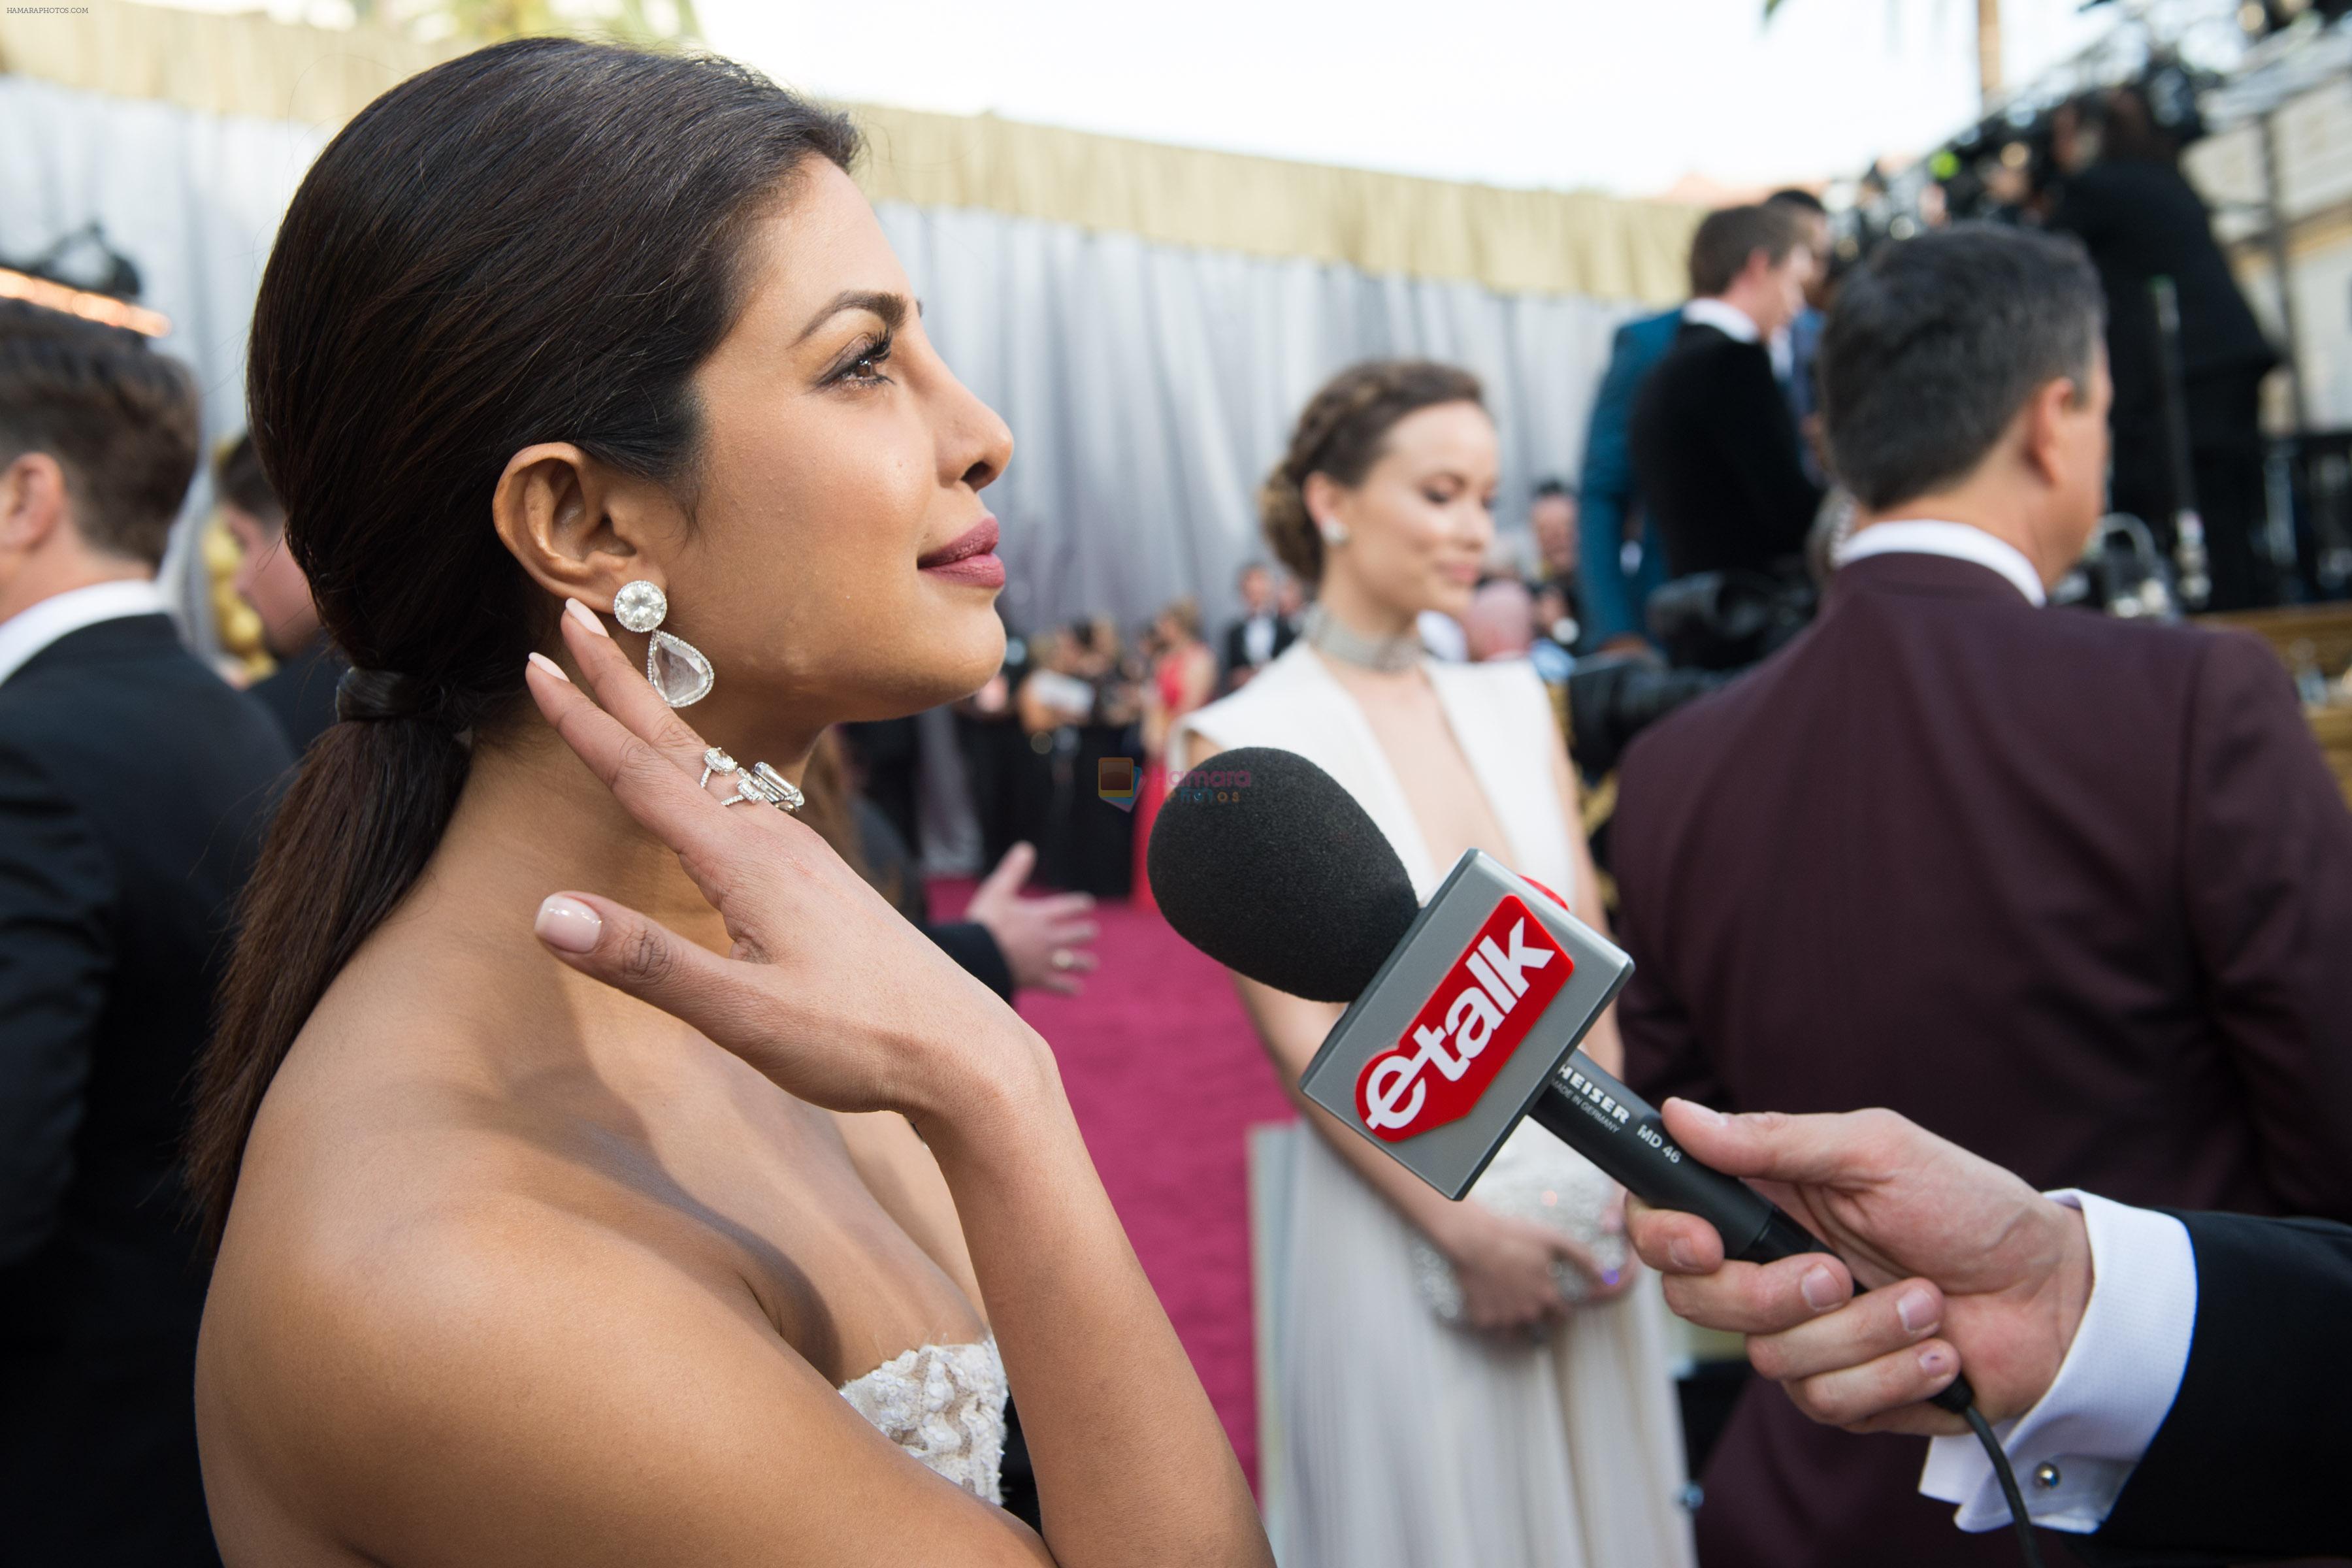 Priyanka Chopra at Oscars